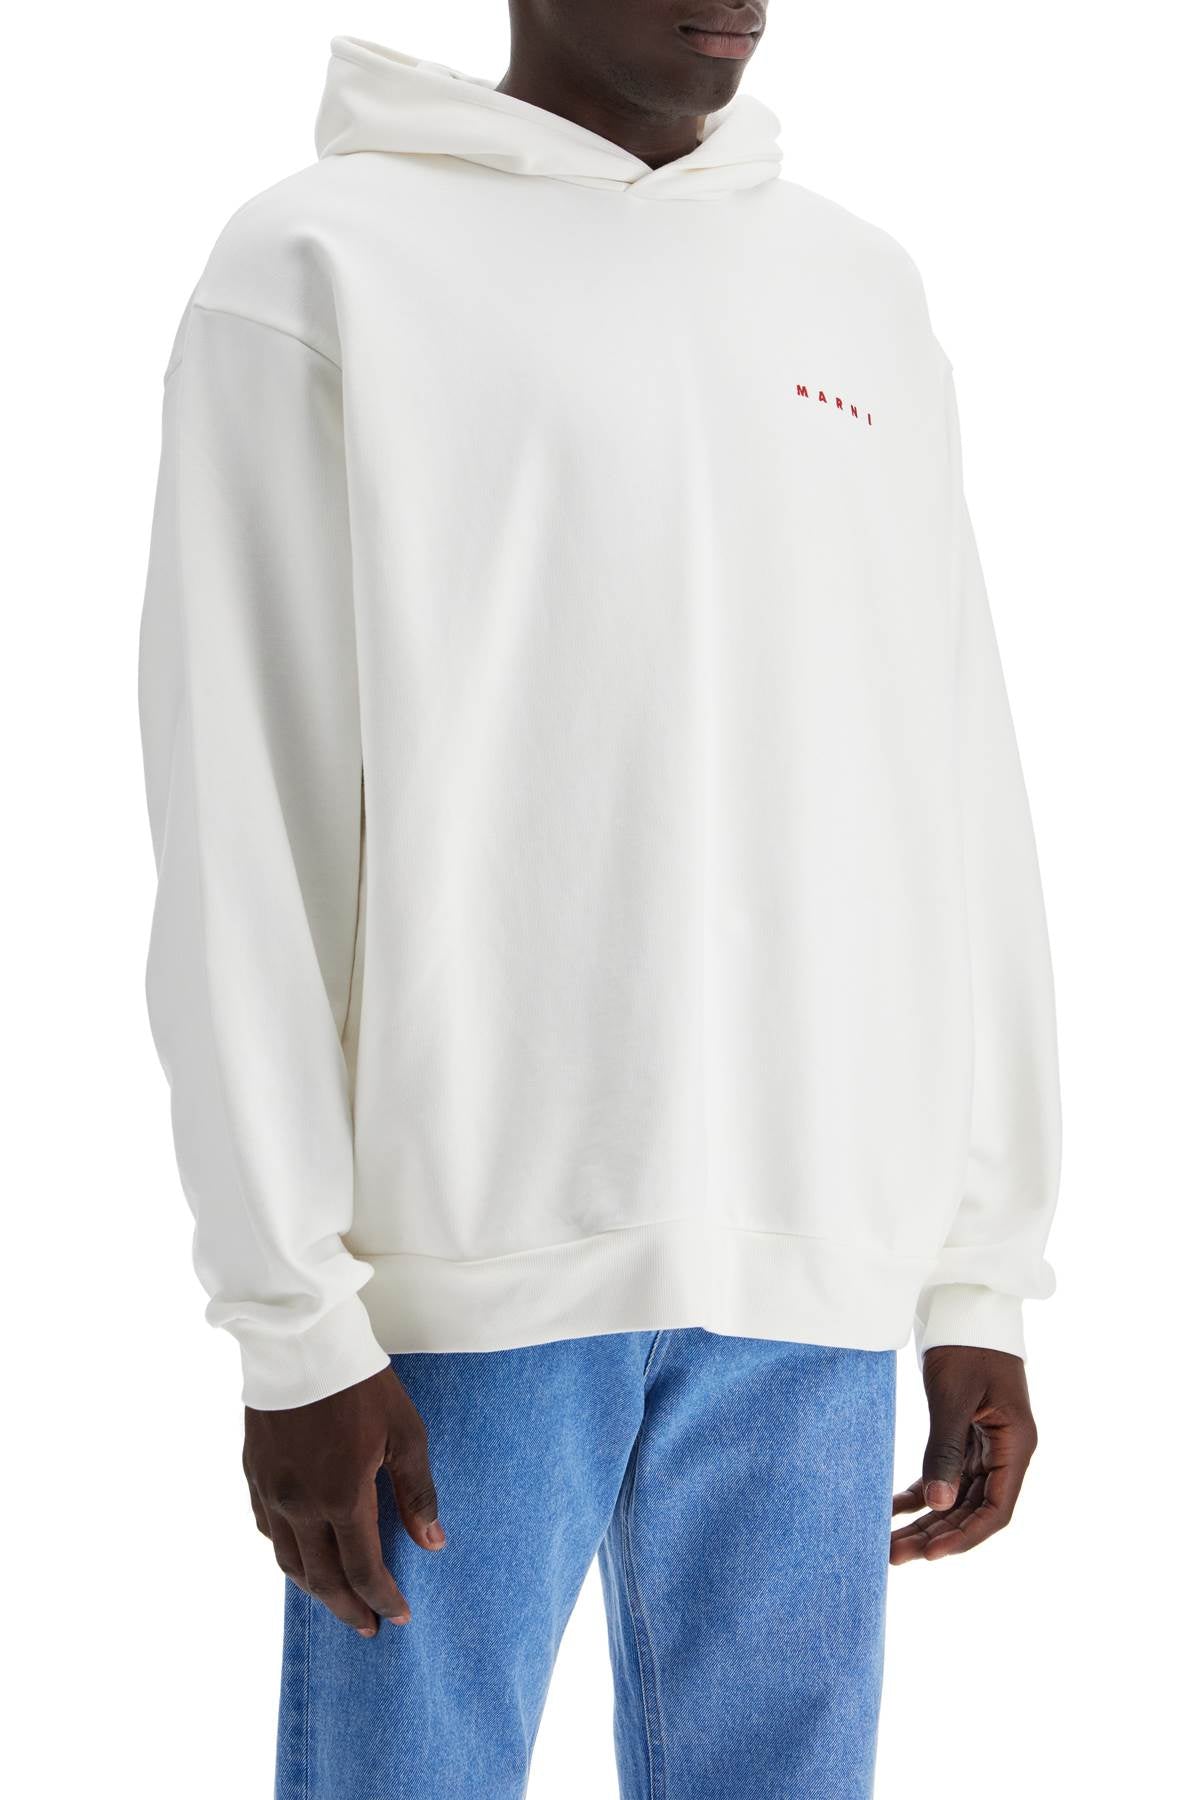 Marni sweatshirt with back - White